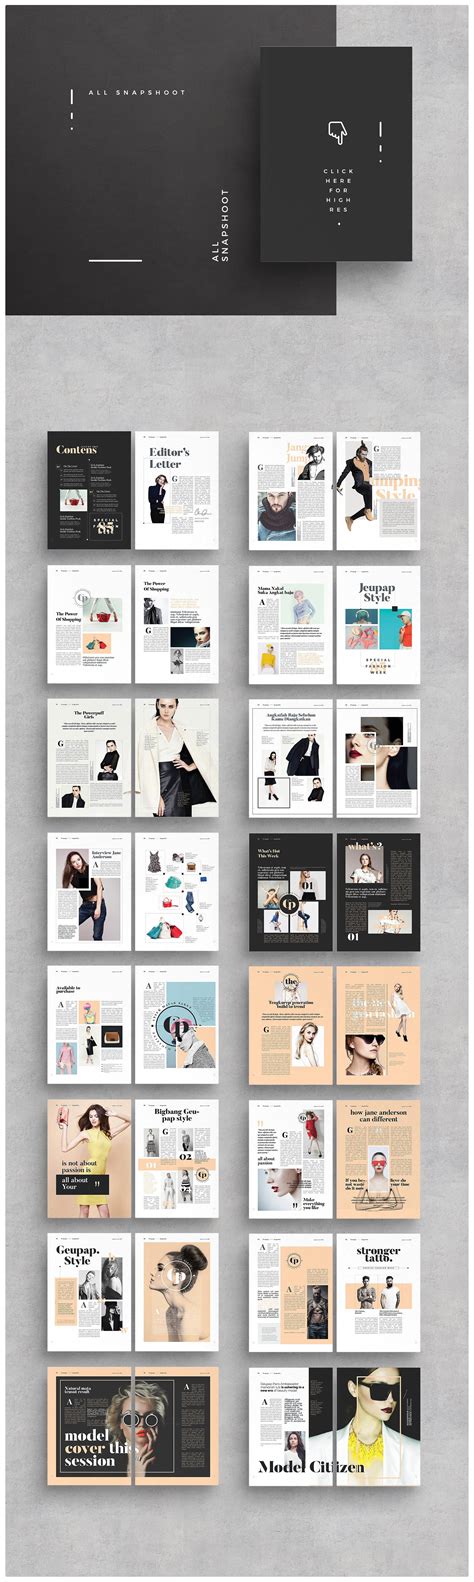 Magazine | Fashion magazine layout, Fashion magazine design layout, Fashion magazine design